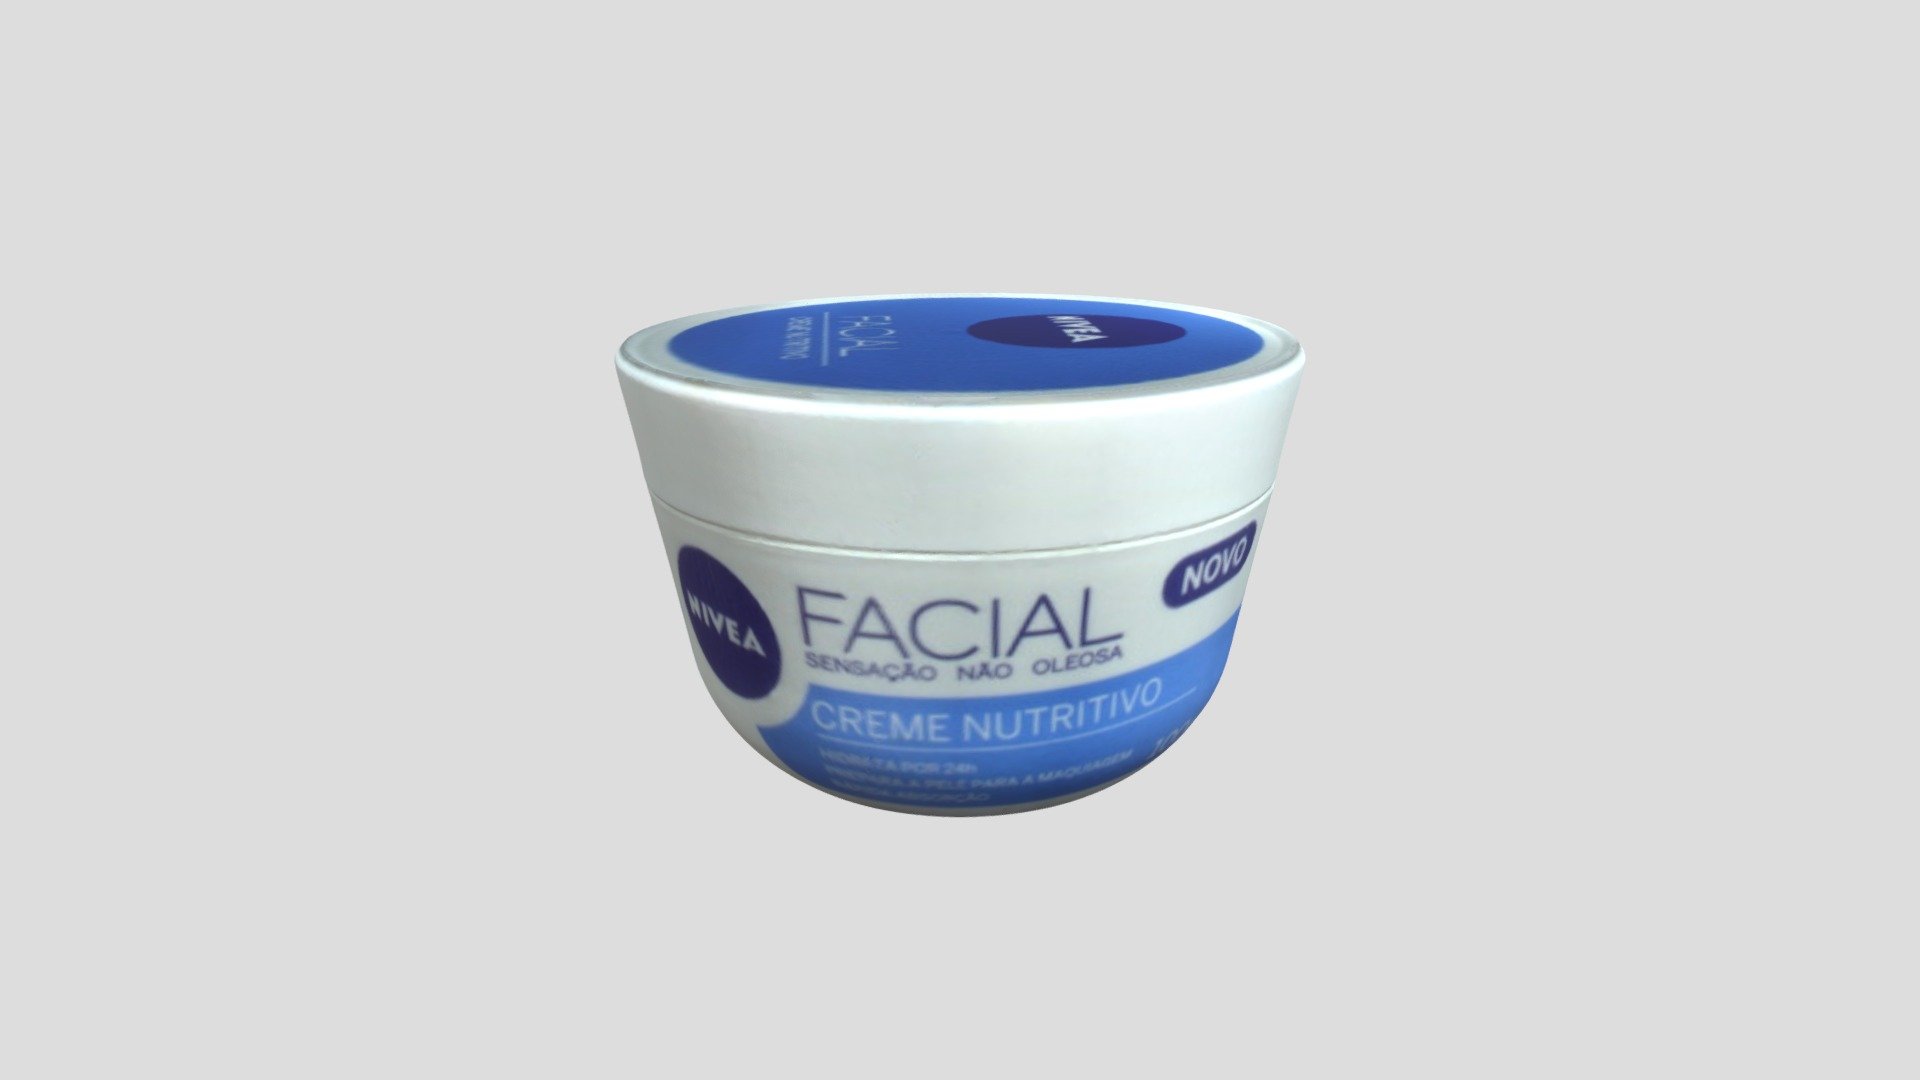 NIVEA - (A) Facial creme nutritivo - 3D model by 42LabsCS 3d model